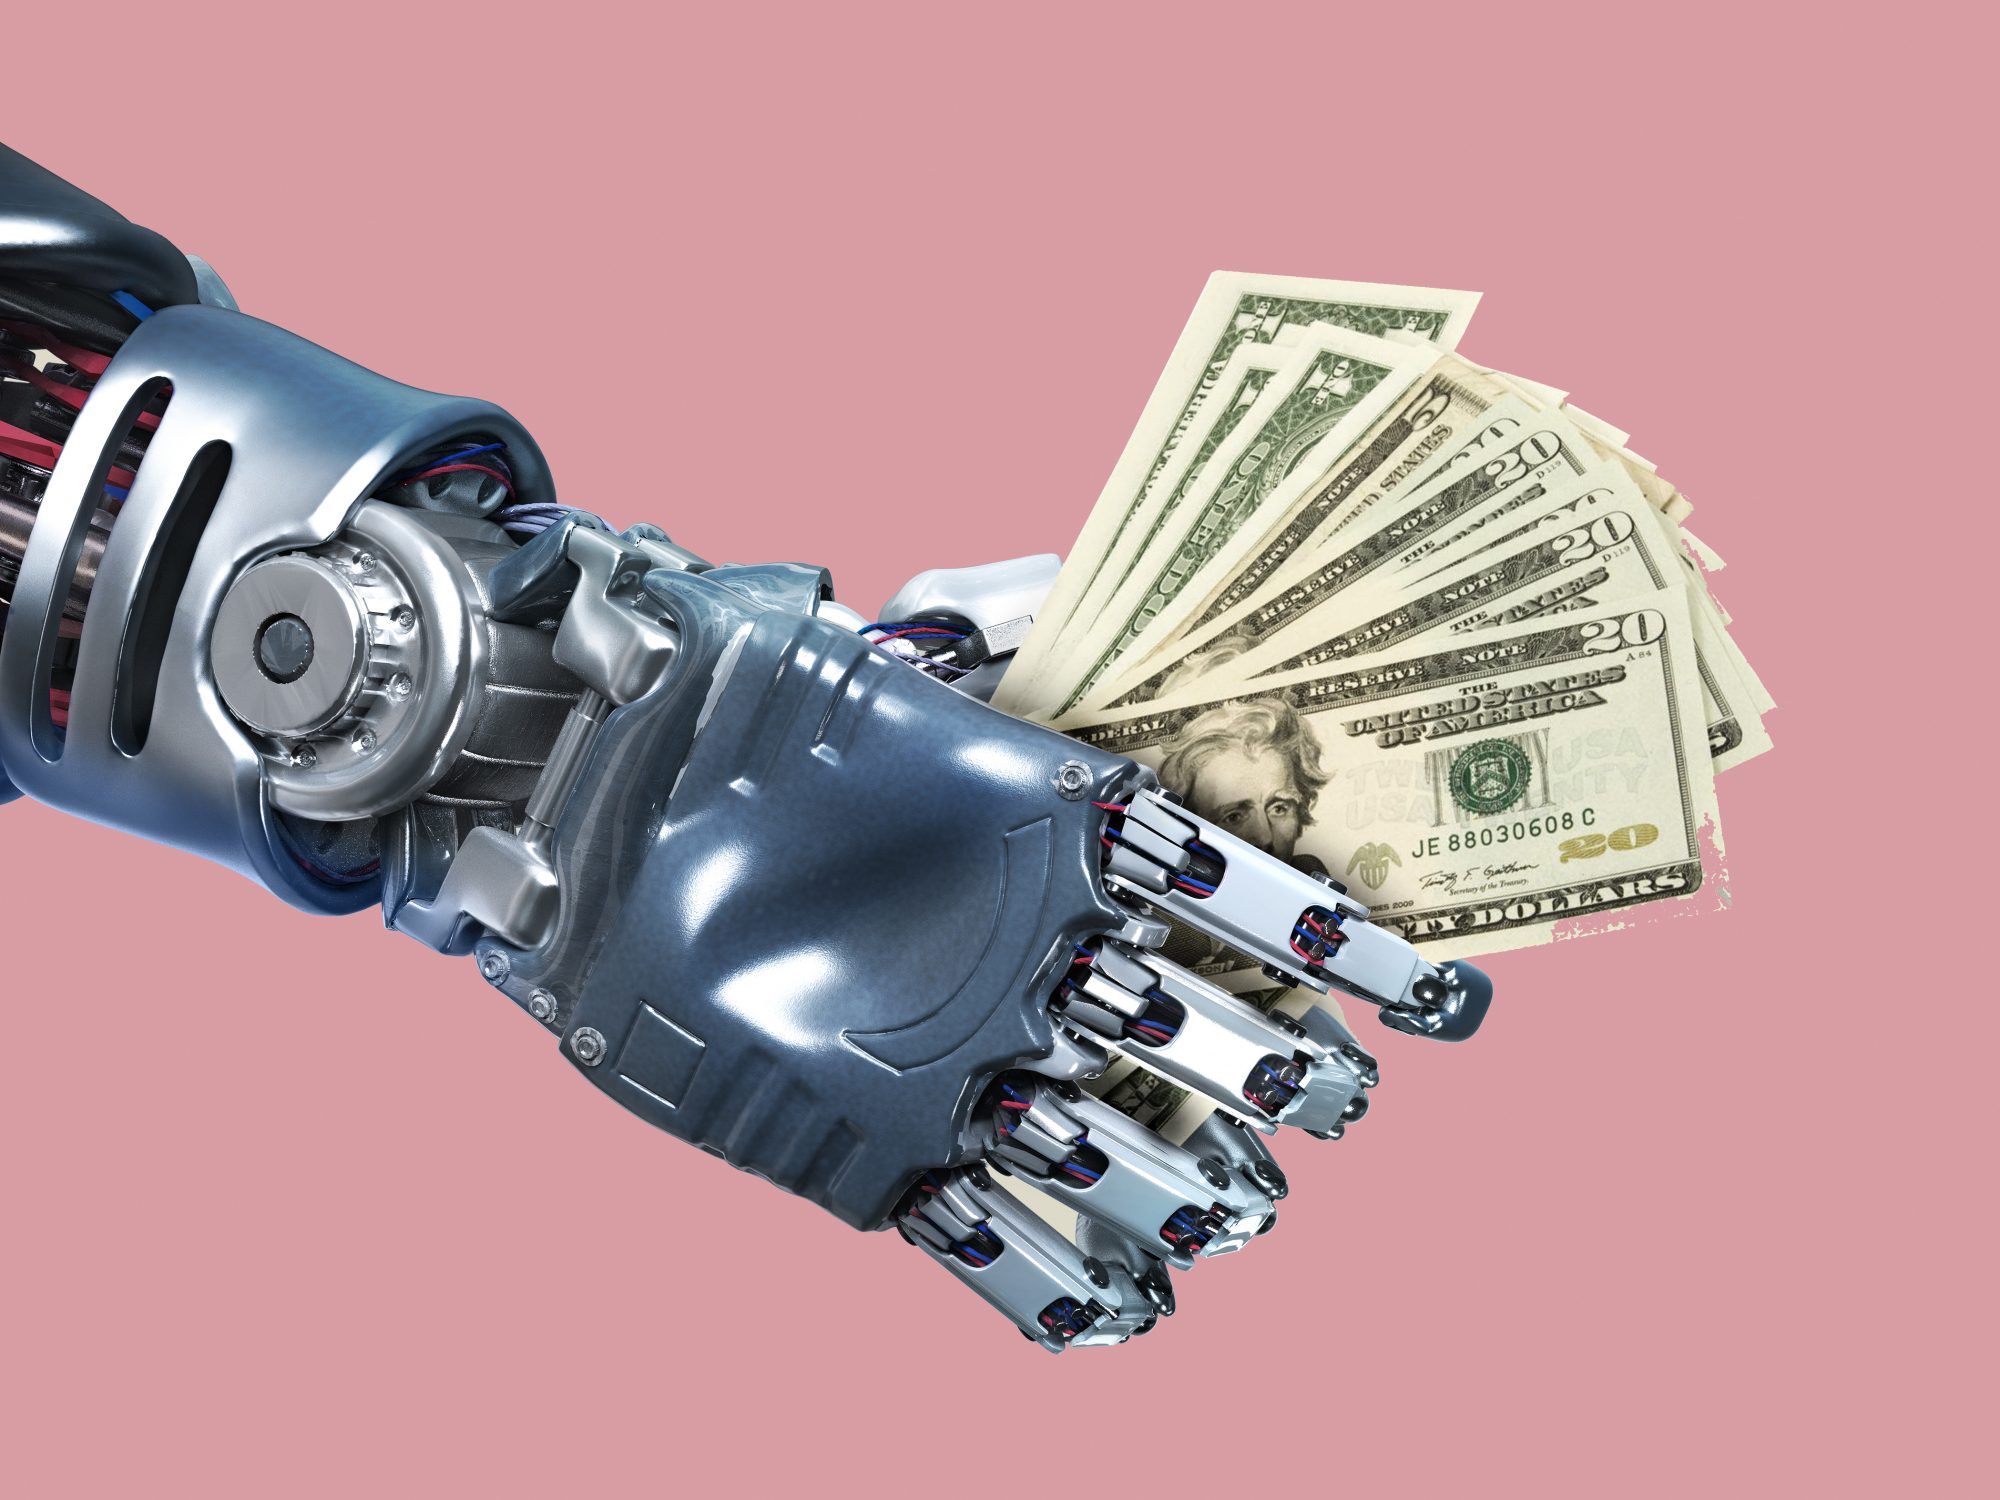 robo-advisor: 로봇팔과 현금